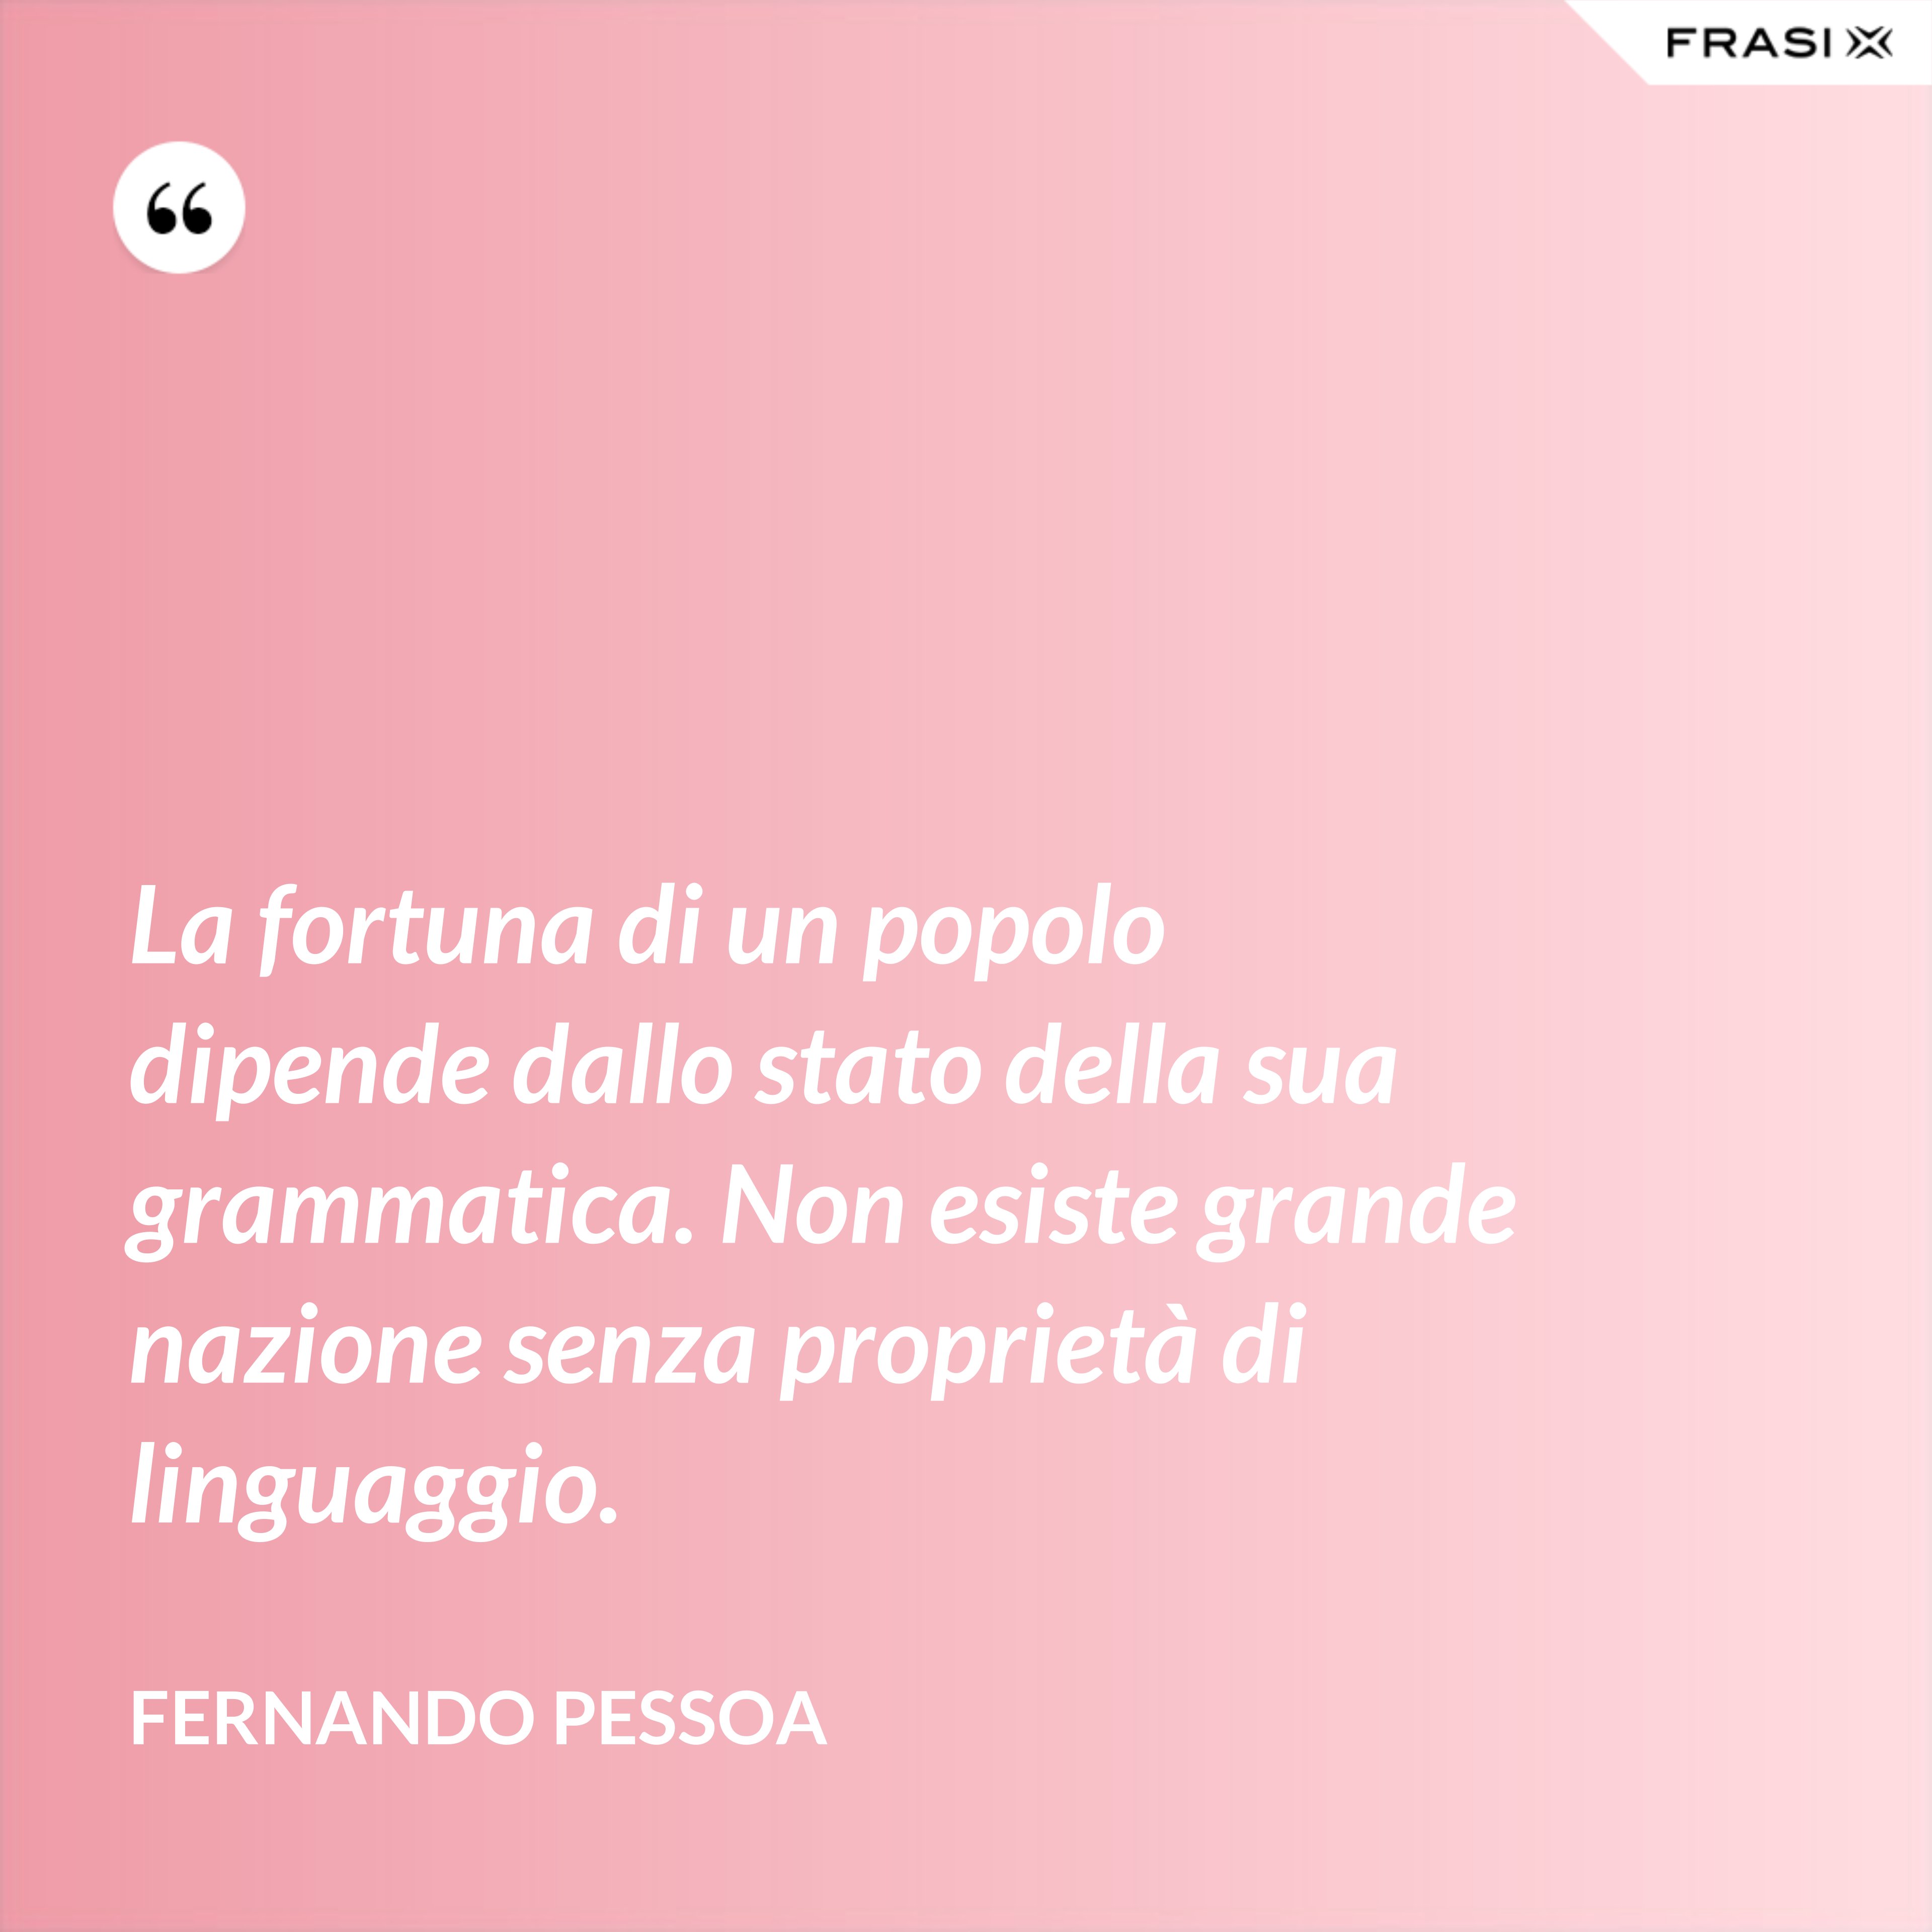 La fortuna di un popolo dipende dallo stato della sua grammatica. Non esiste grande nazione senza proprietà di linguaggio. - Fernando Pessoa